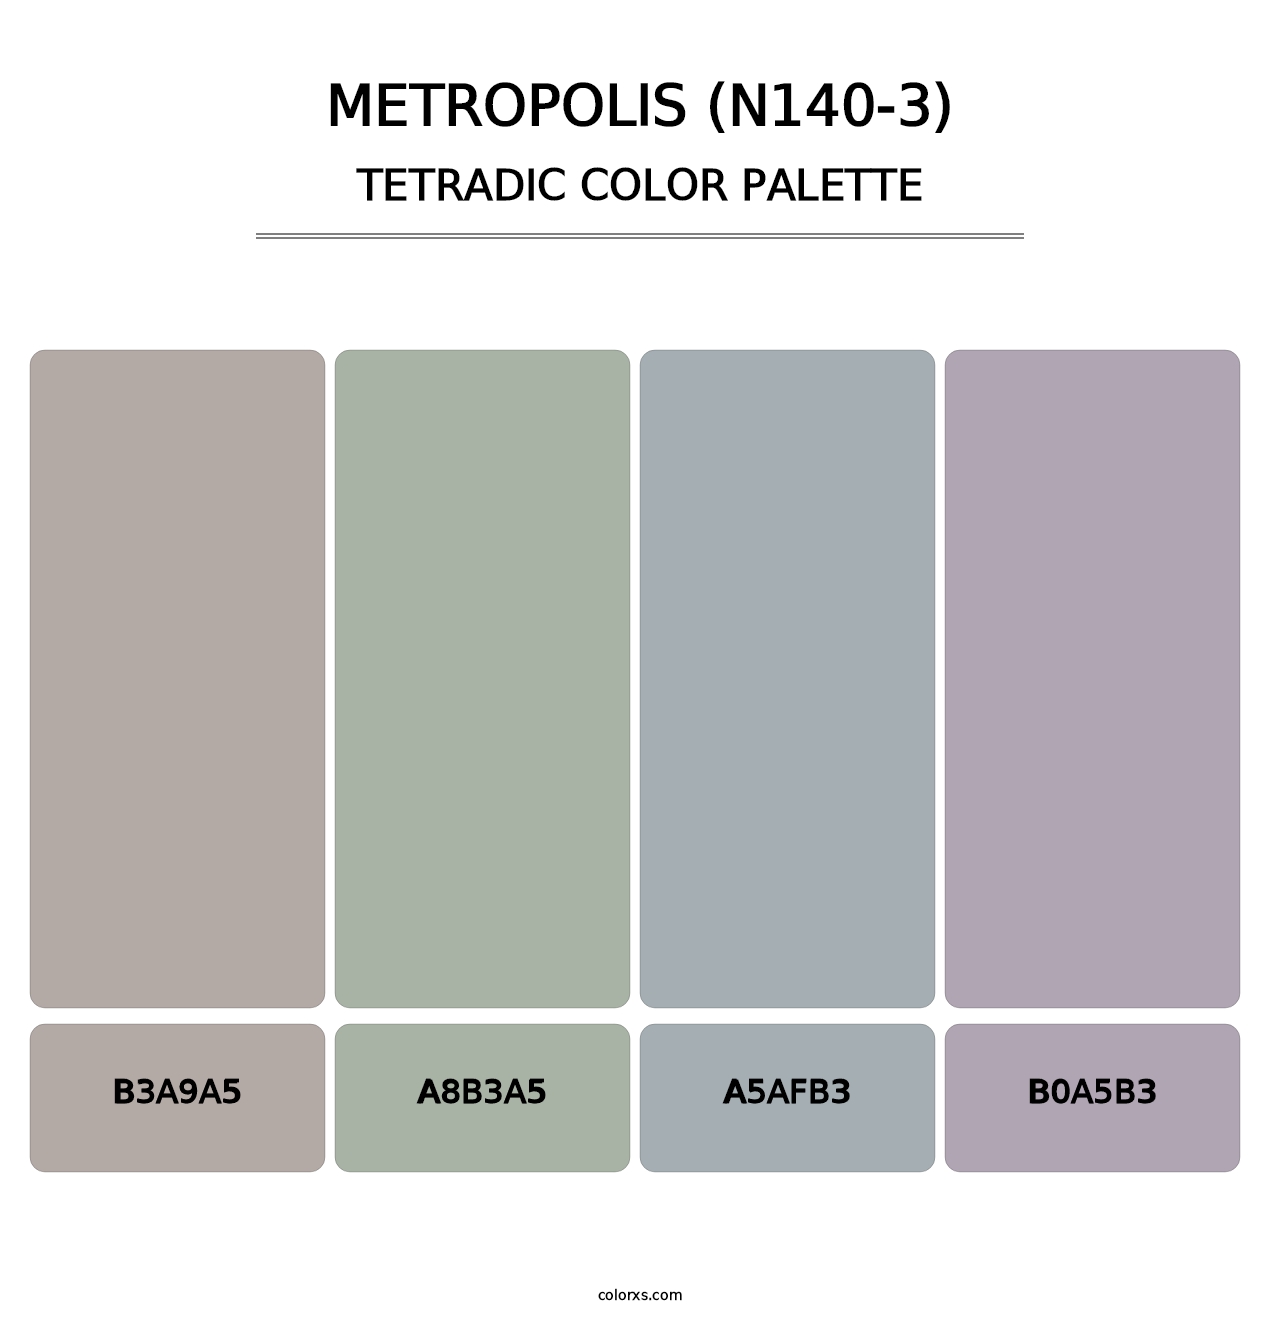 Metropolis (N140-3) - Tetradic Color Palette